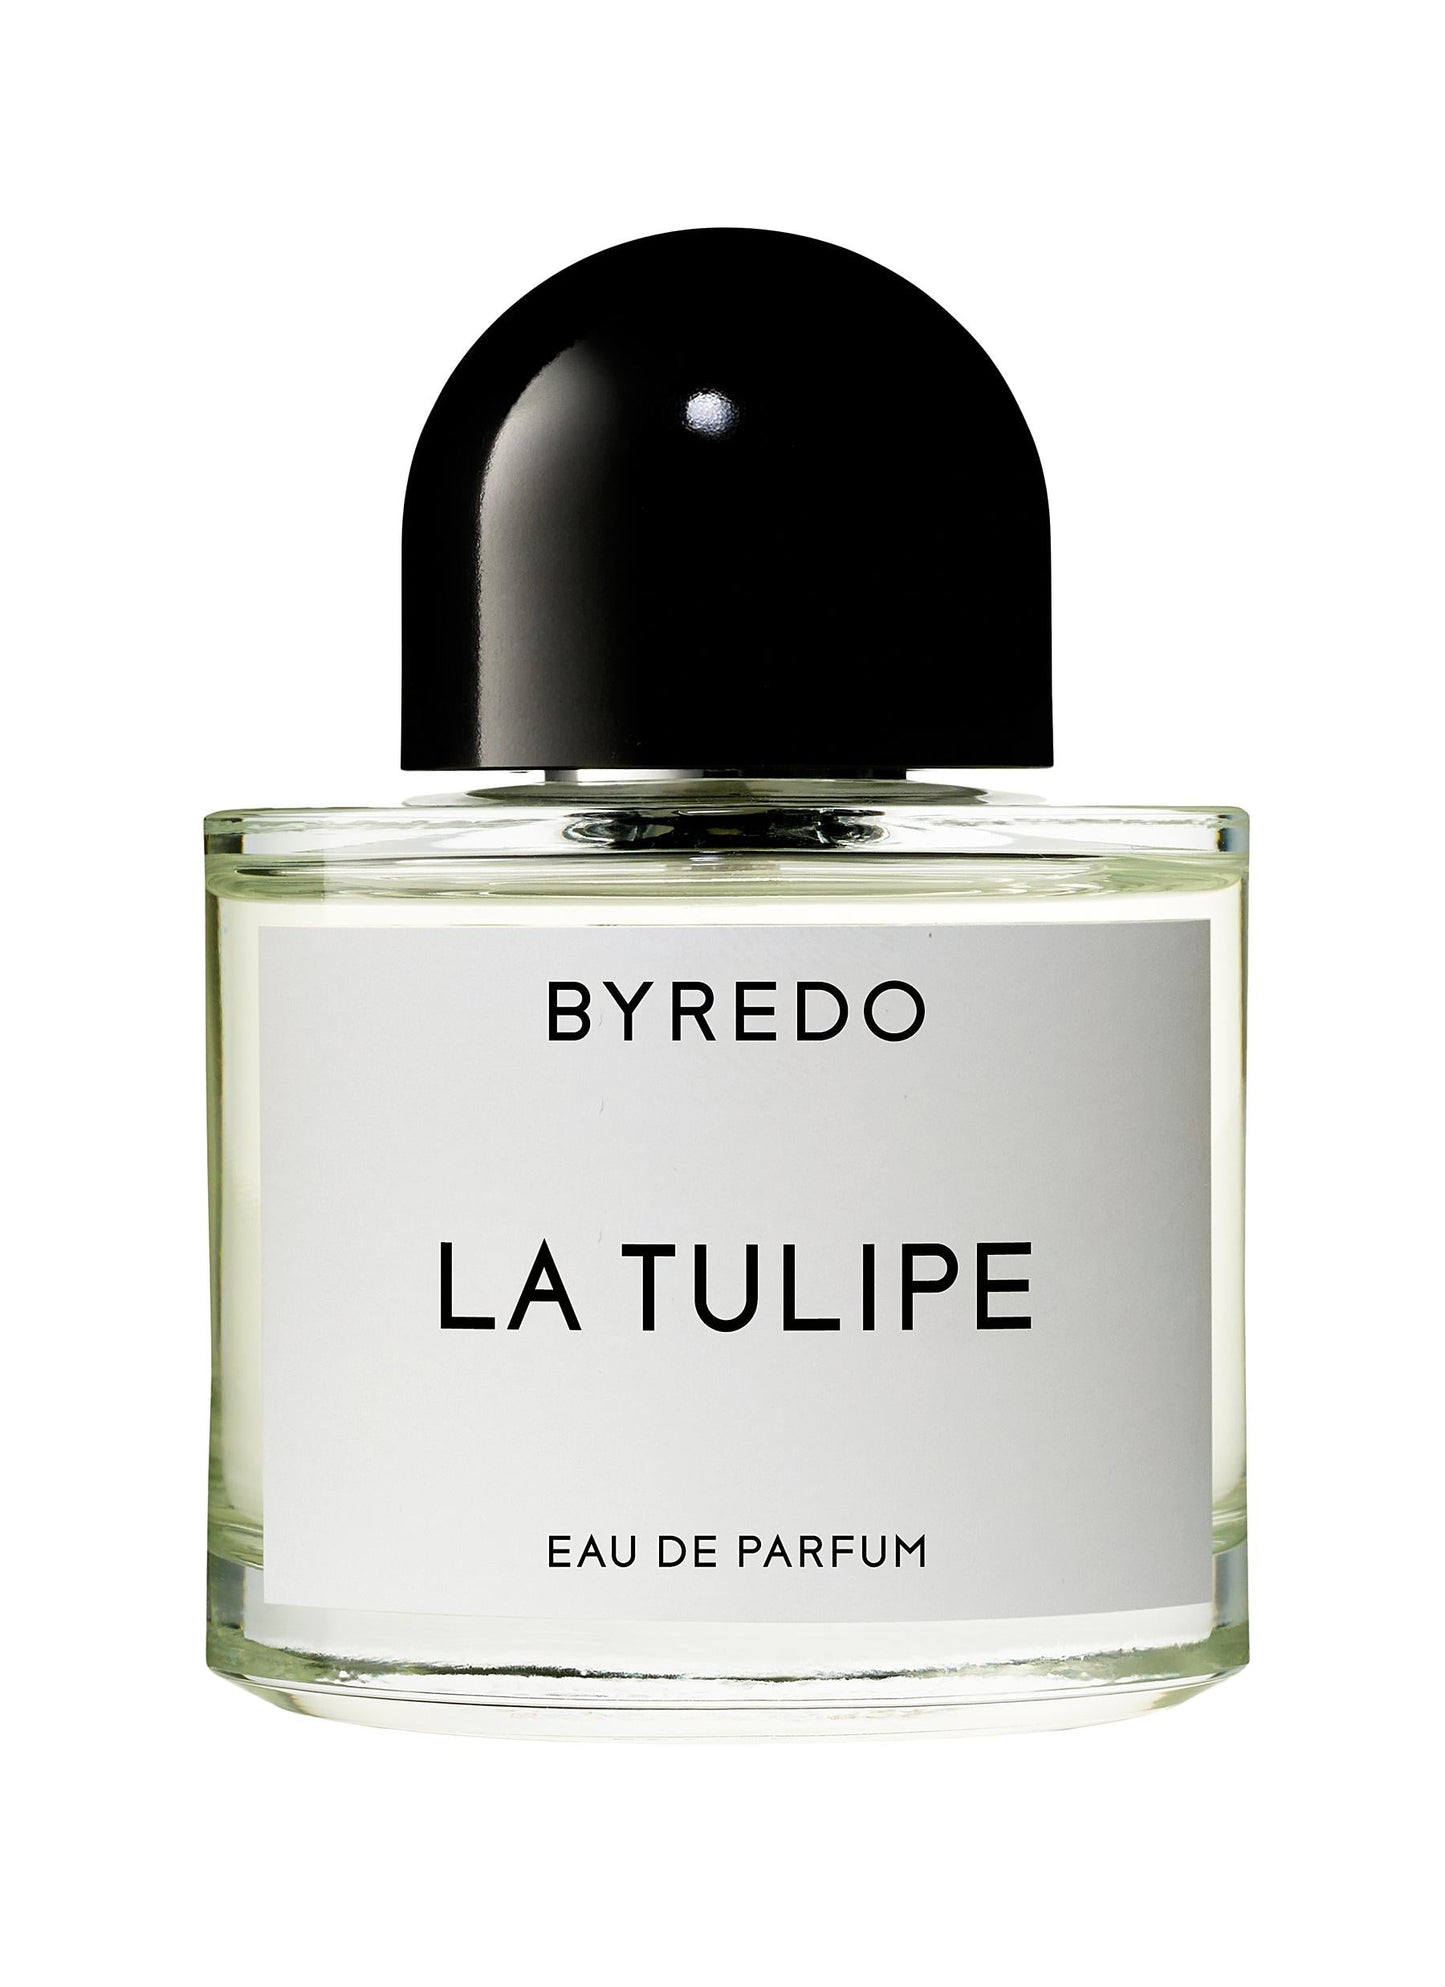 Byredo La Tulipe Eau De Parfum Spray